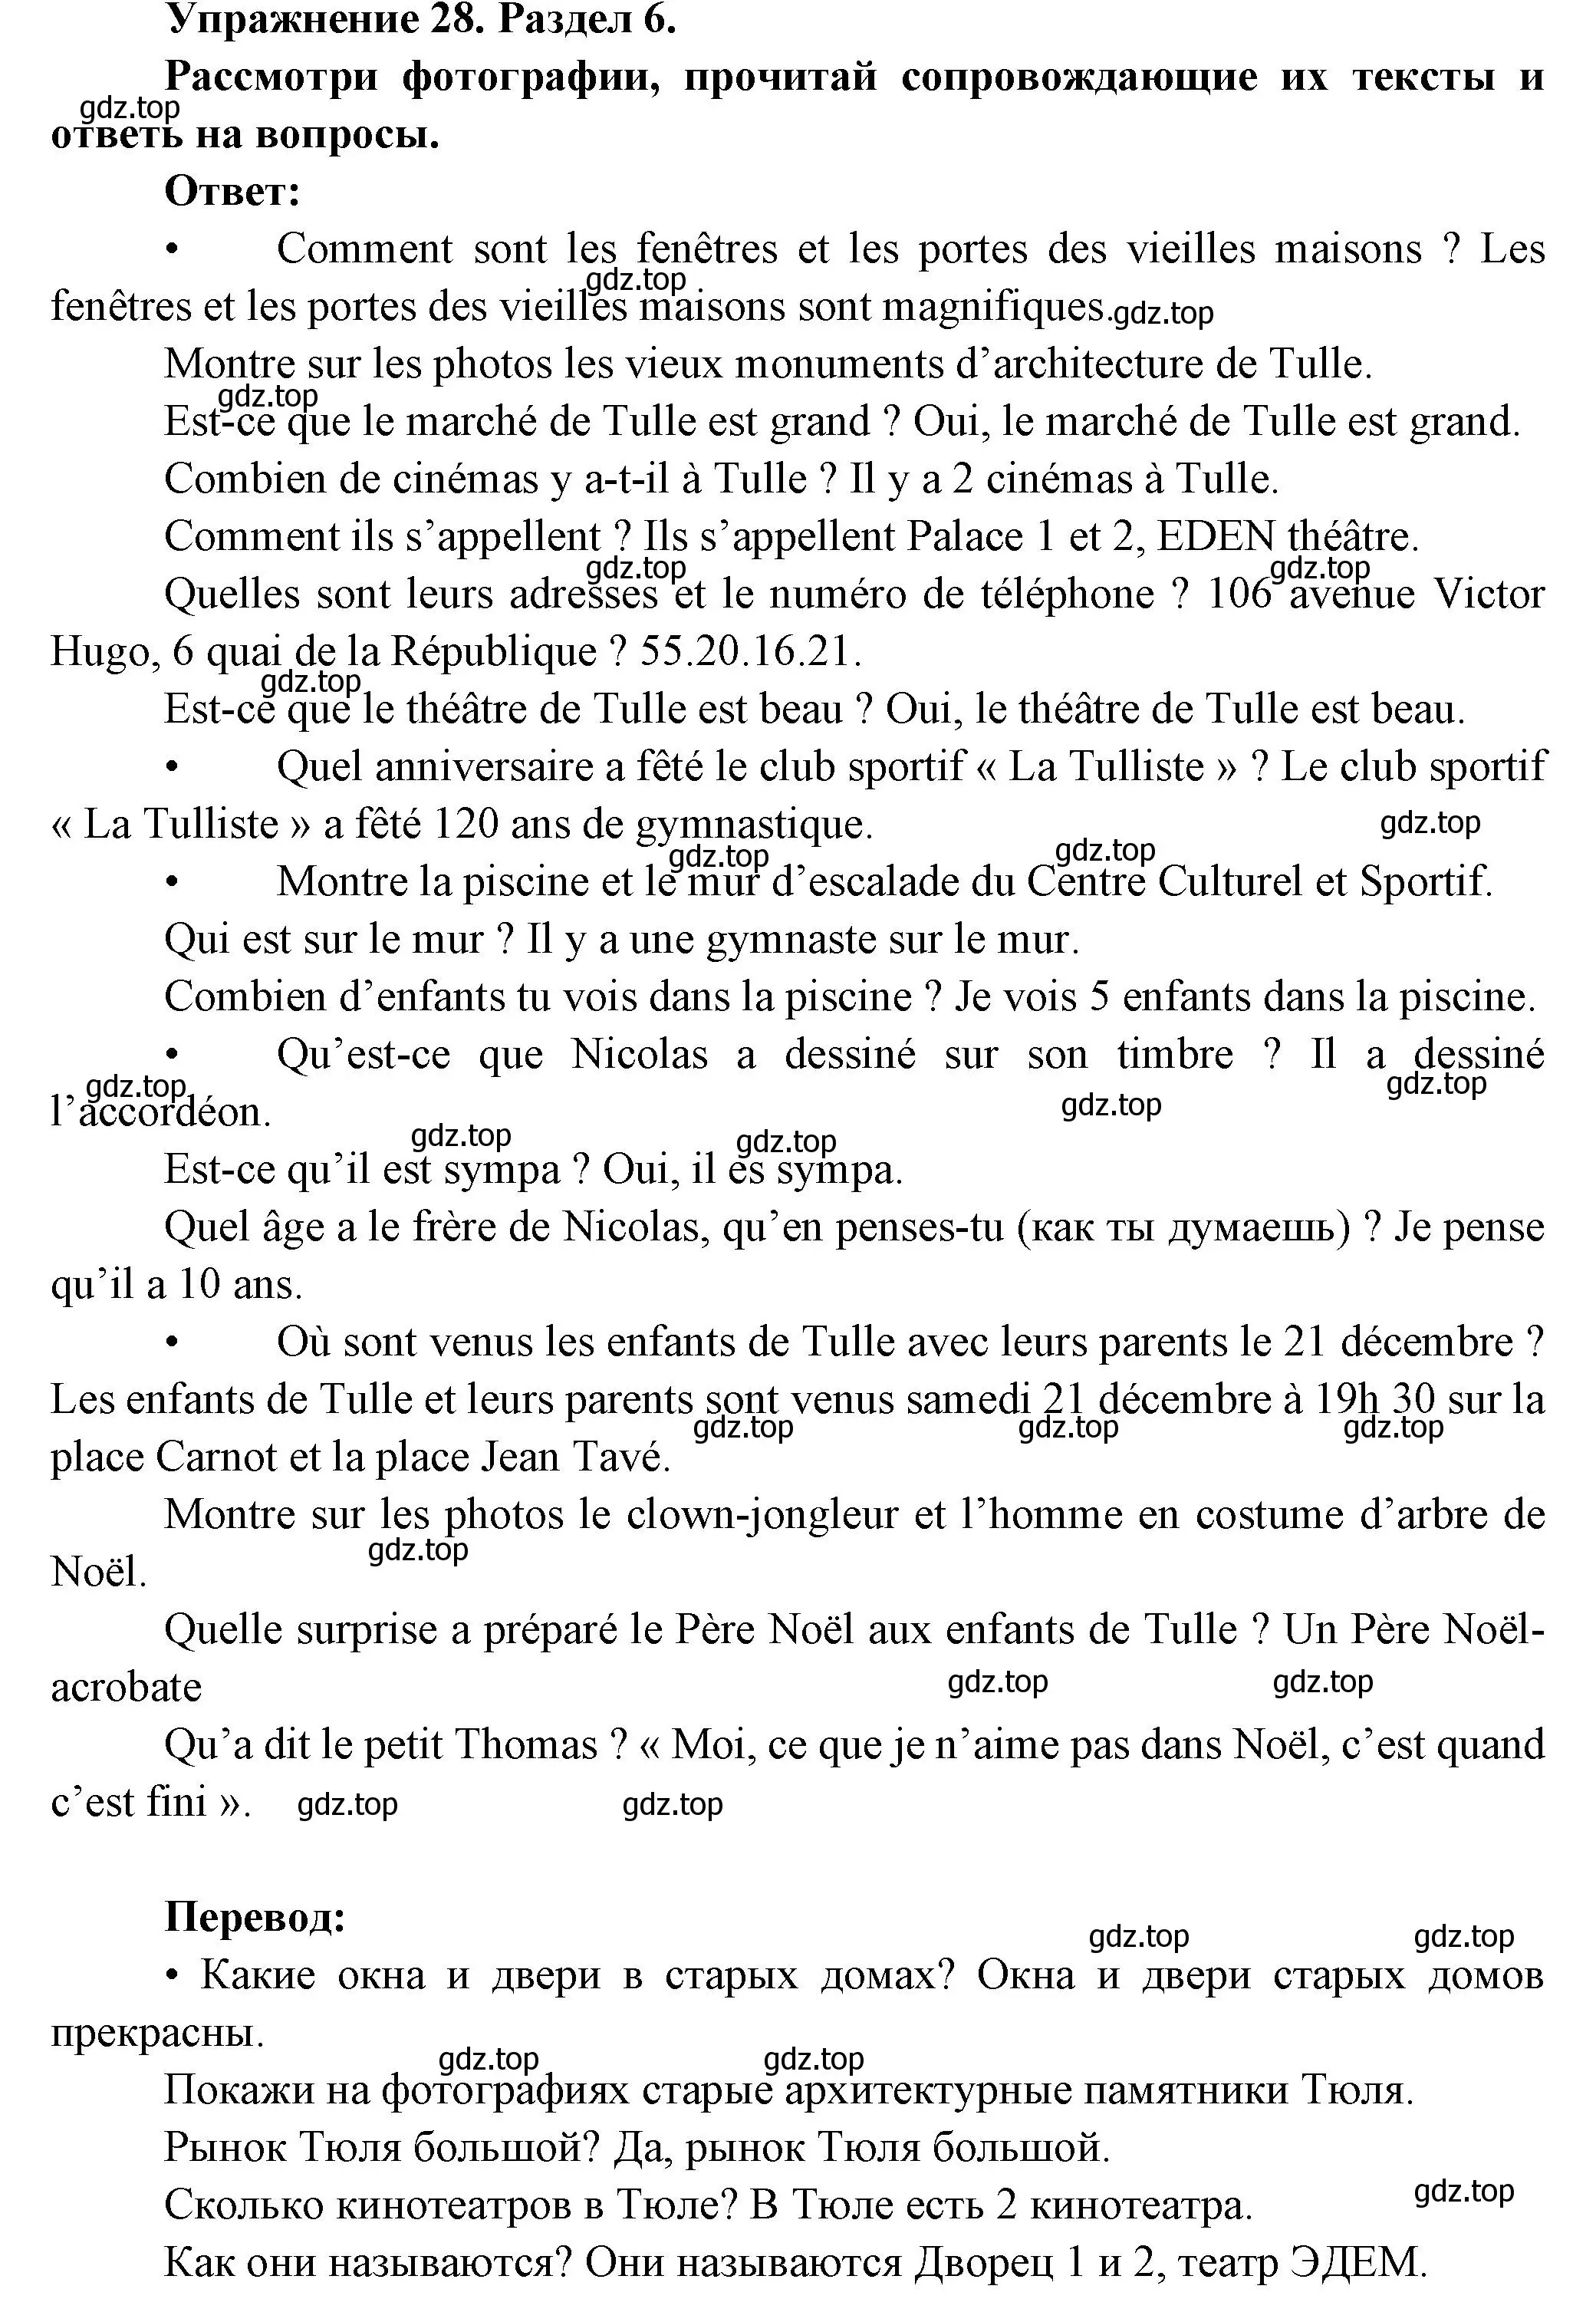 Решение номер 28 (страница 66) гдз по французскому языку 5 класс Береговская, Белосельская, учебник 2 часть